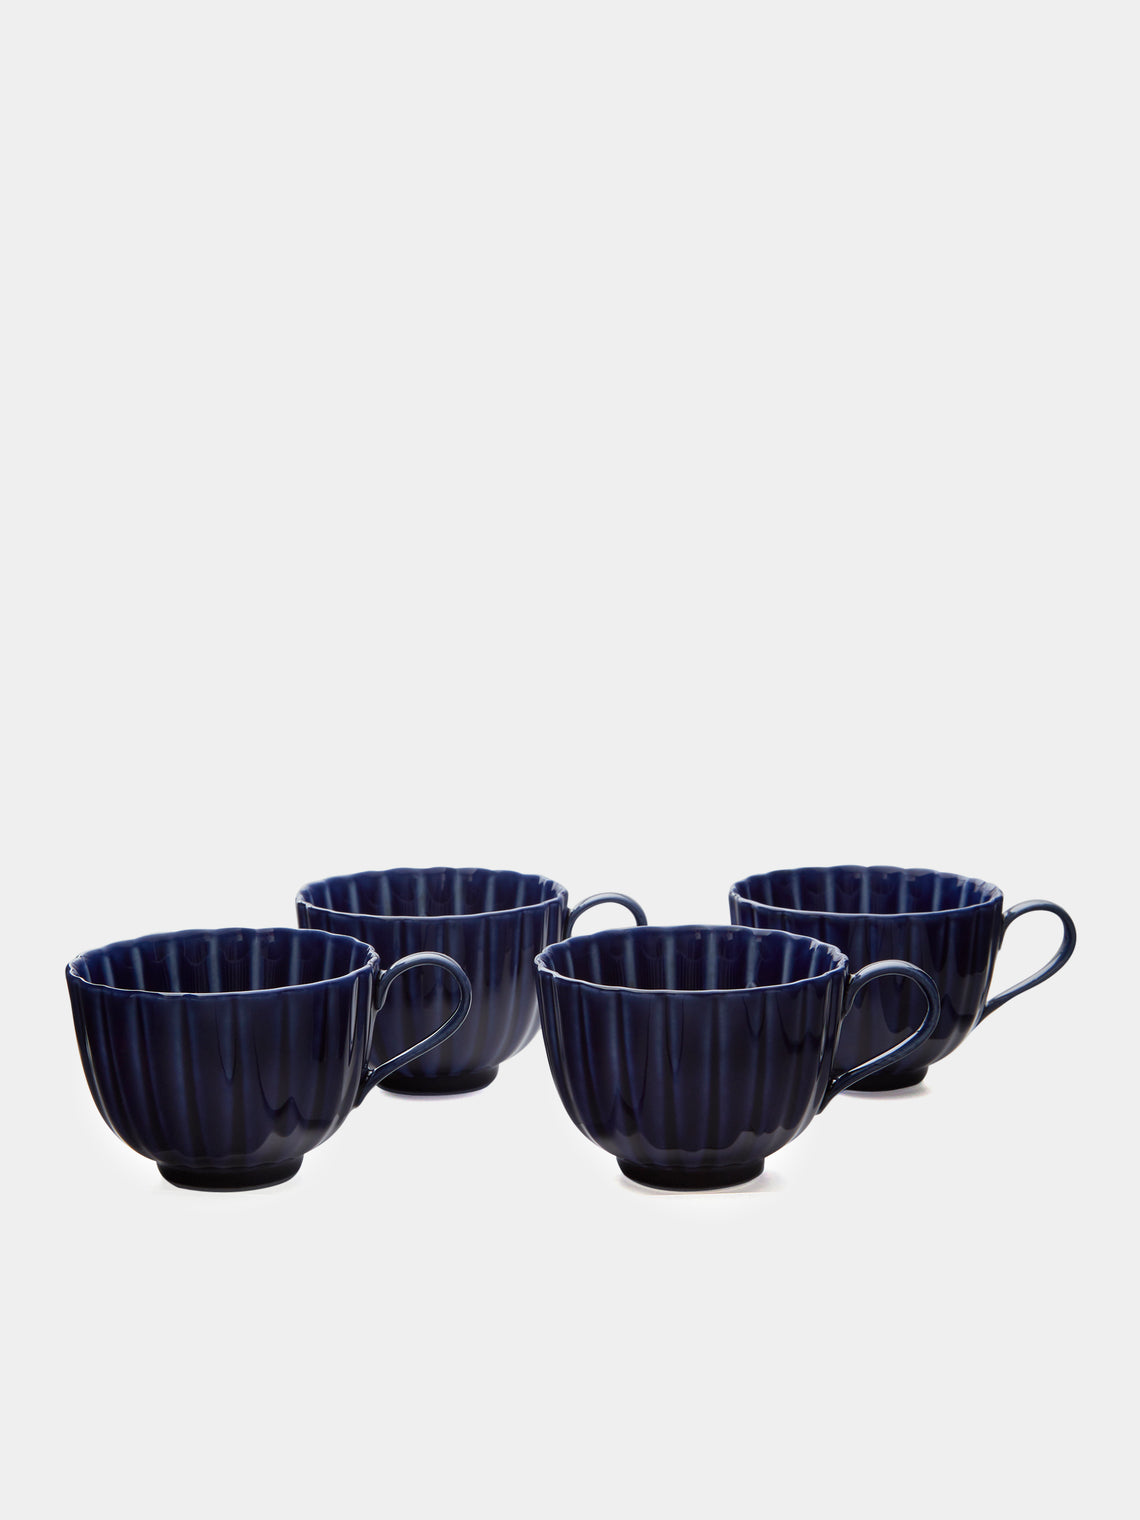 Kaneko Kohyo - Giyaman Urushi Ceramic Coffee Cups (Set of 4) - Blue - ABASK